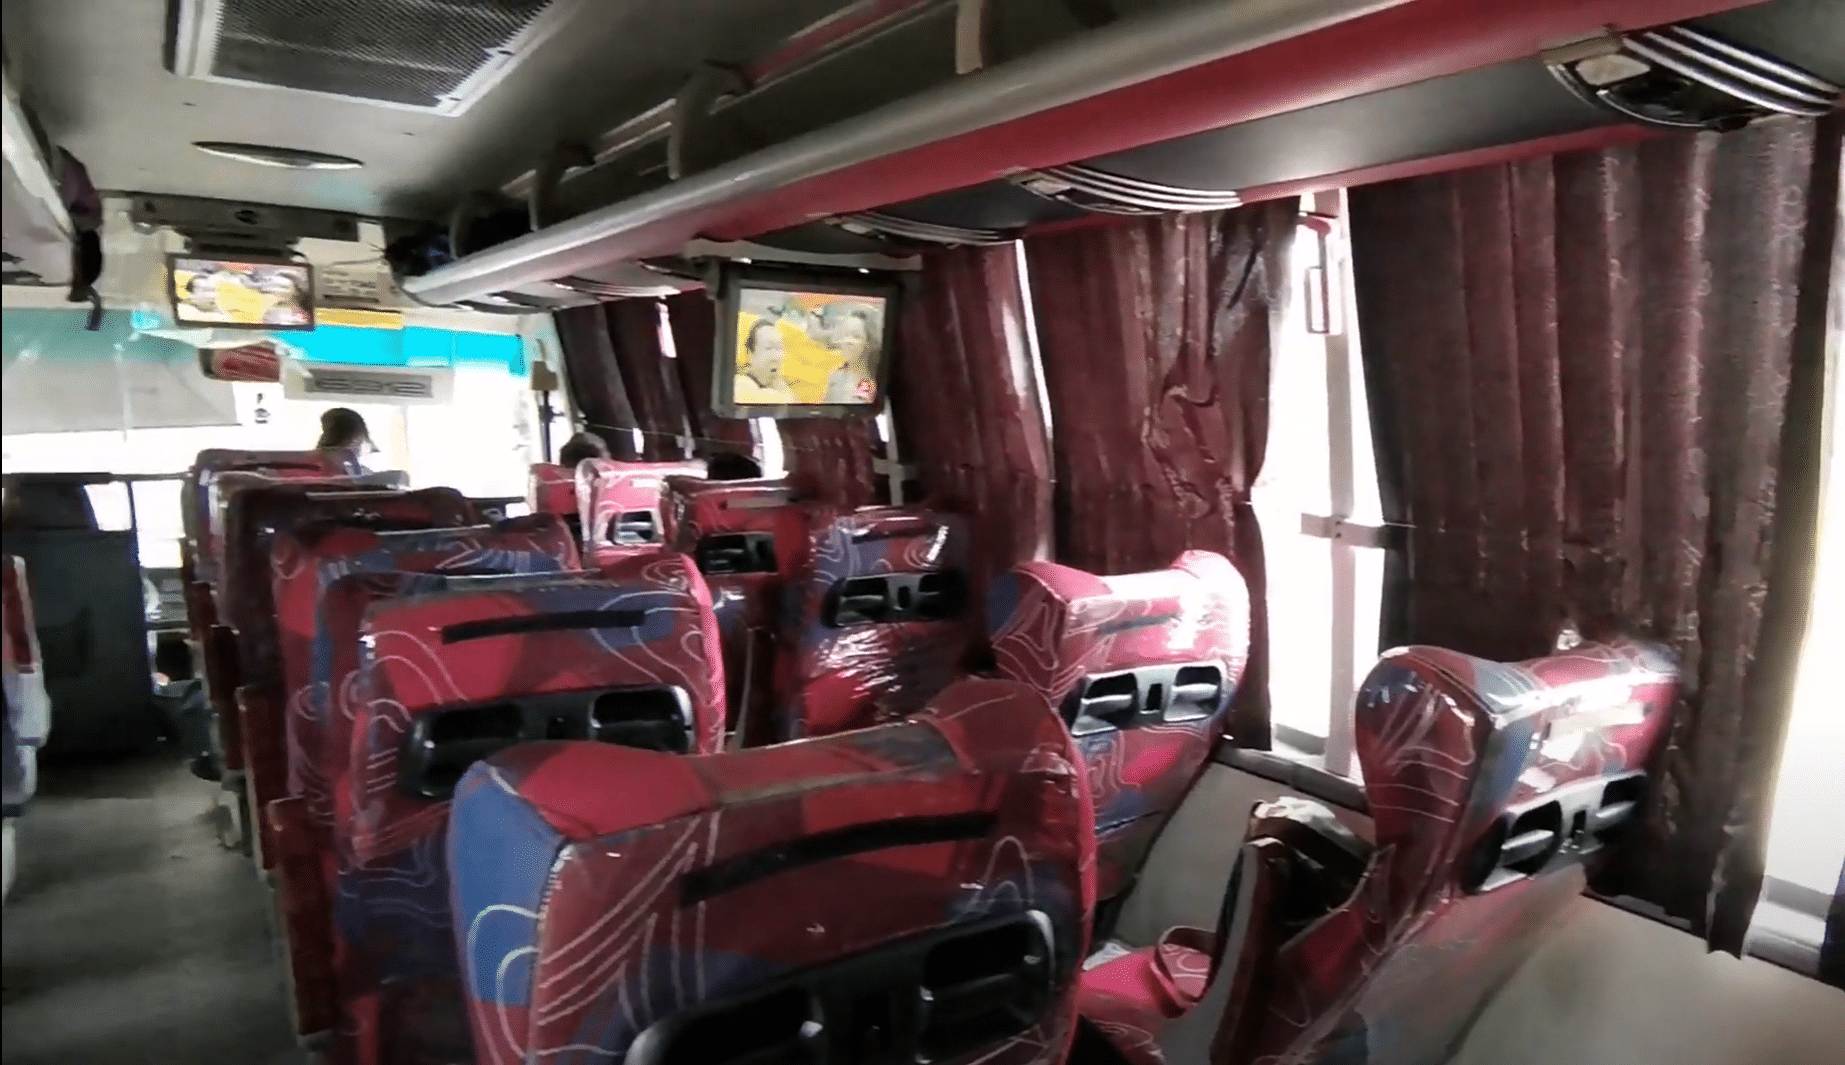 Top liner bus